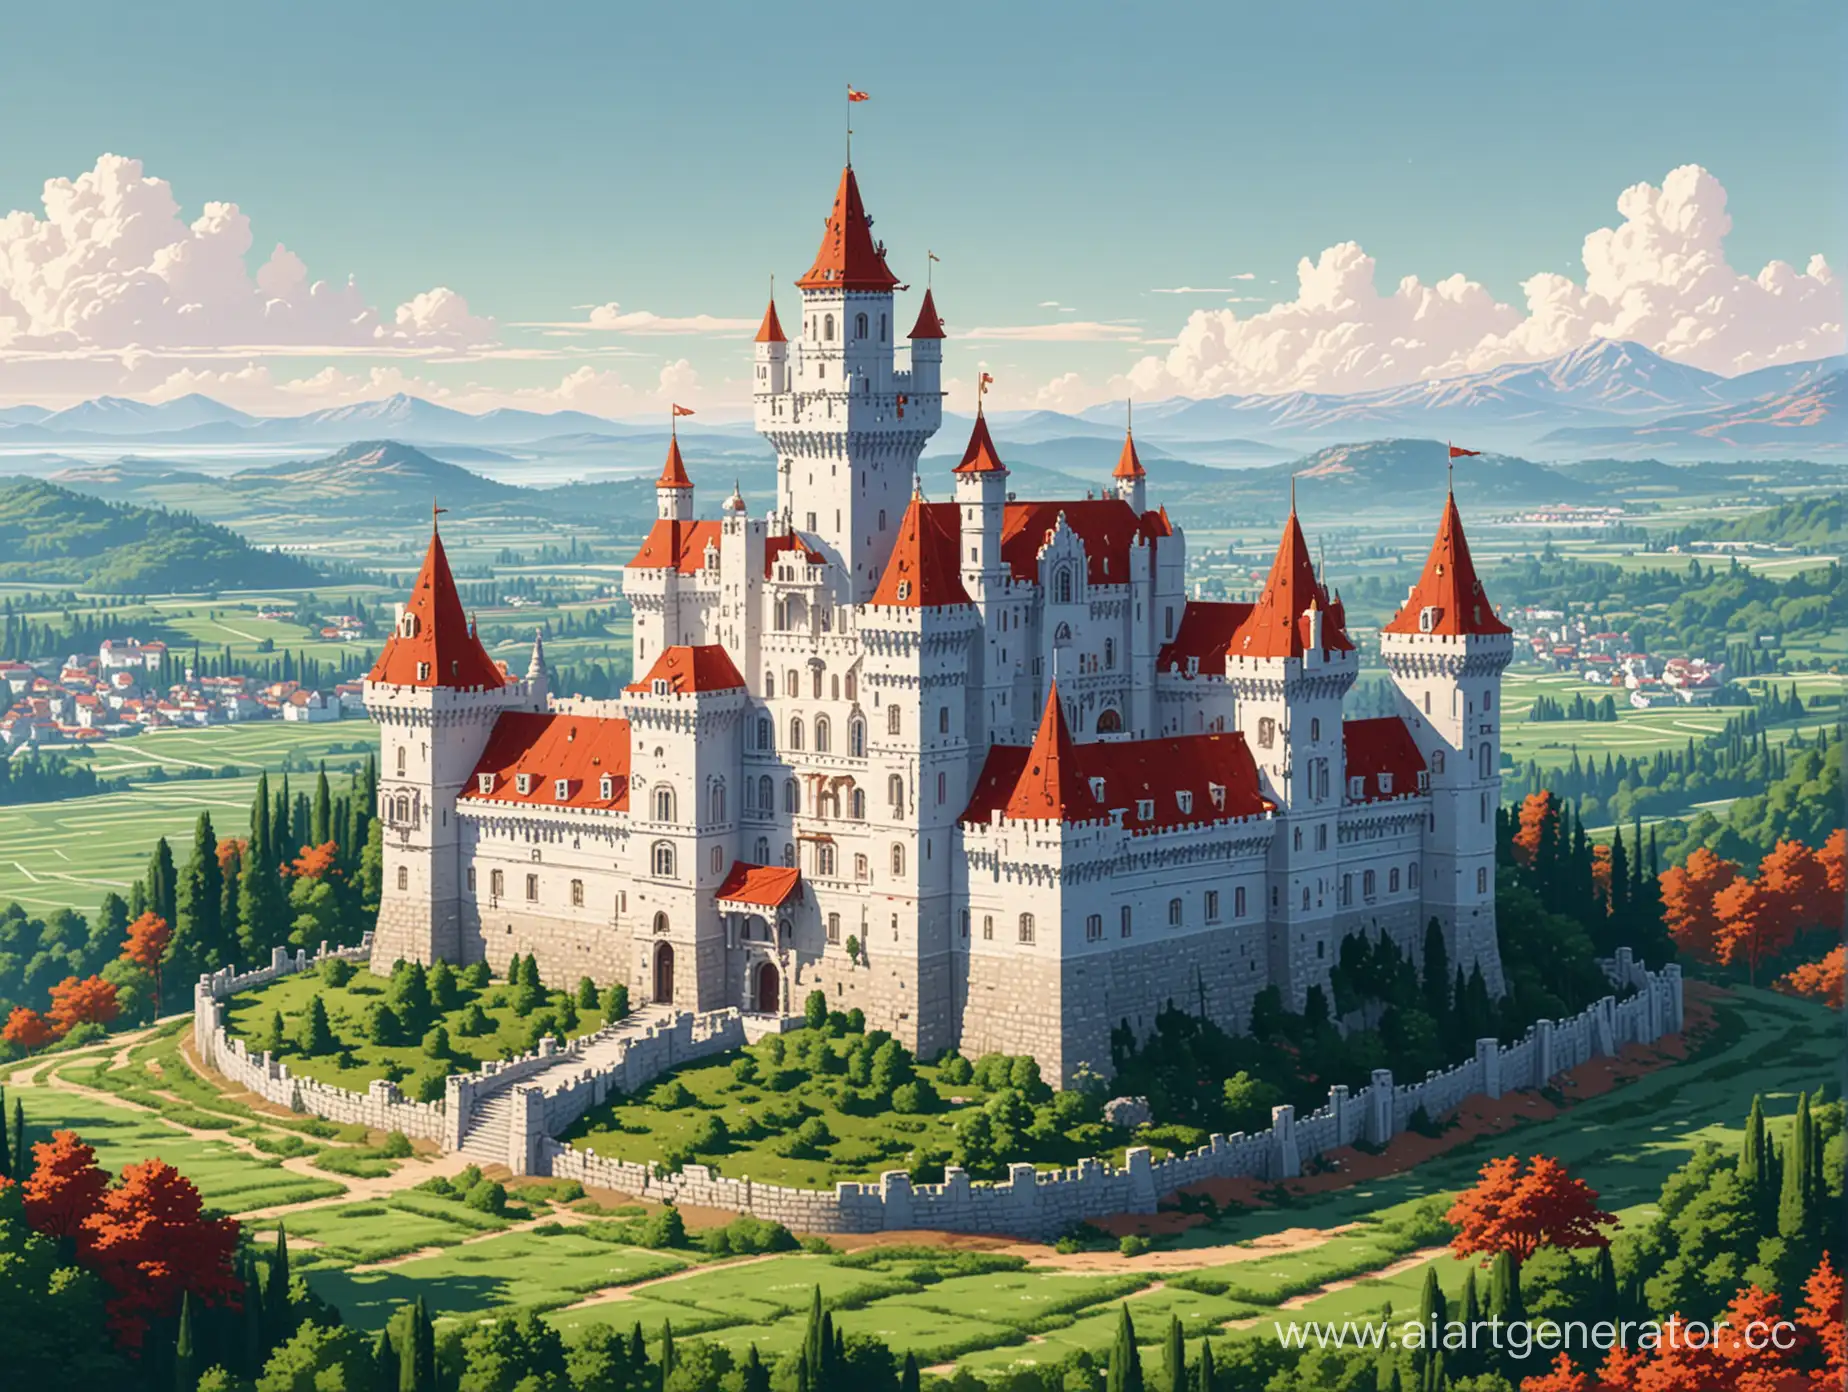 Нарисуй мне картинку в стиле пиксель арт, на которой изображен роскошный белый замок с красными крышами, чистое небо и зелёные поля, вокруг замка расположен город
Разрешение картинки должно быть 480 на 270 пикселей



